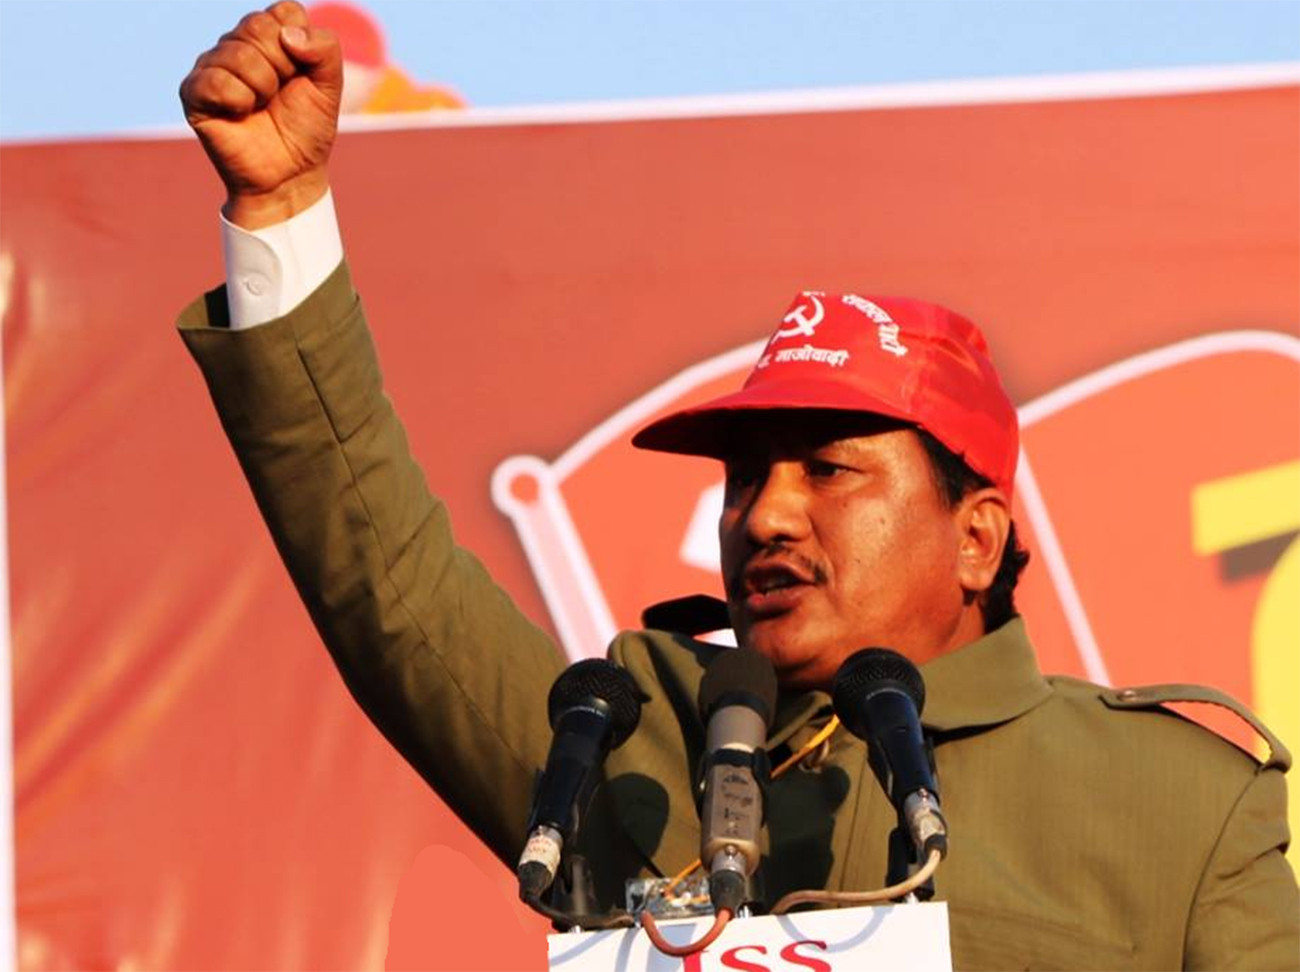 फुट्यो विप्लवको पार्टी, नयाँ पार्टीको नाम जन समाजवादी मञ्च, नेपाल राखियो